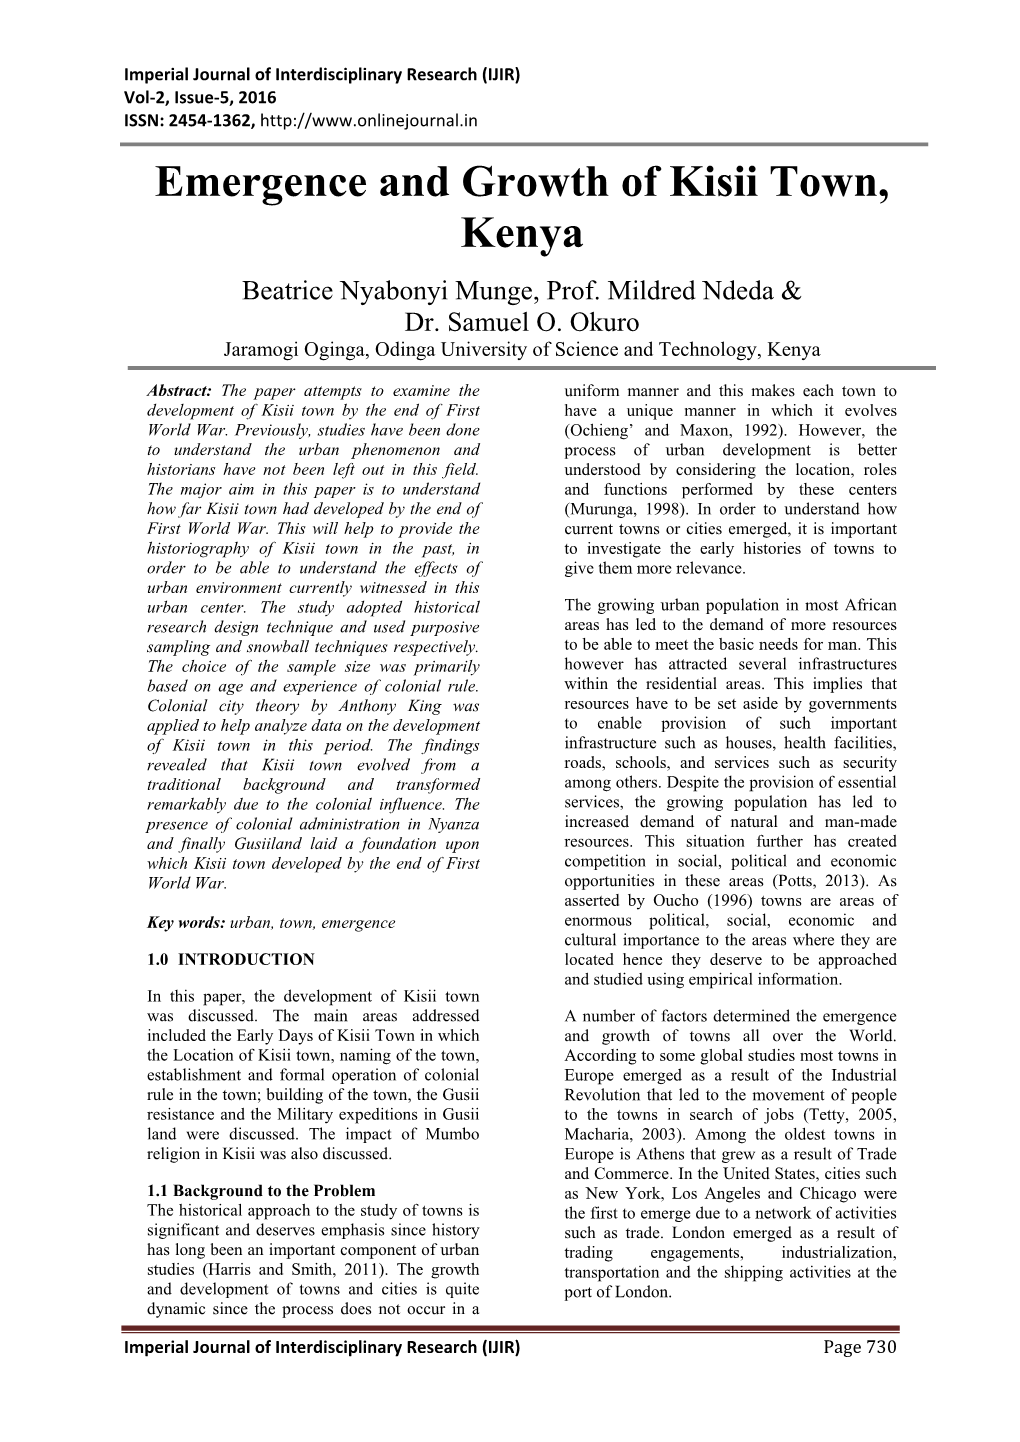 Emergence and Growth of Kisii Town, Kenya Beatrice Nyabonyi Munge, Prof